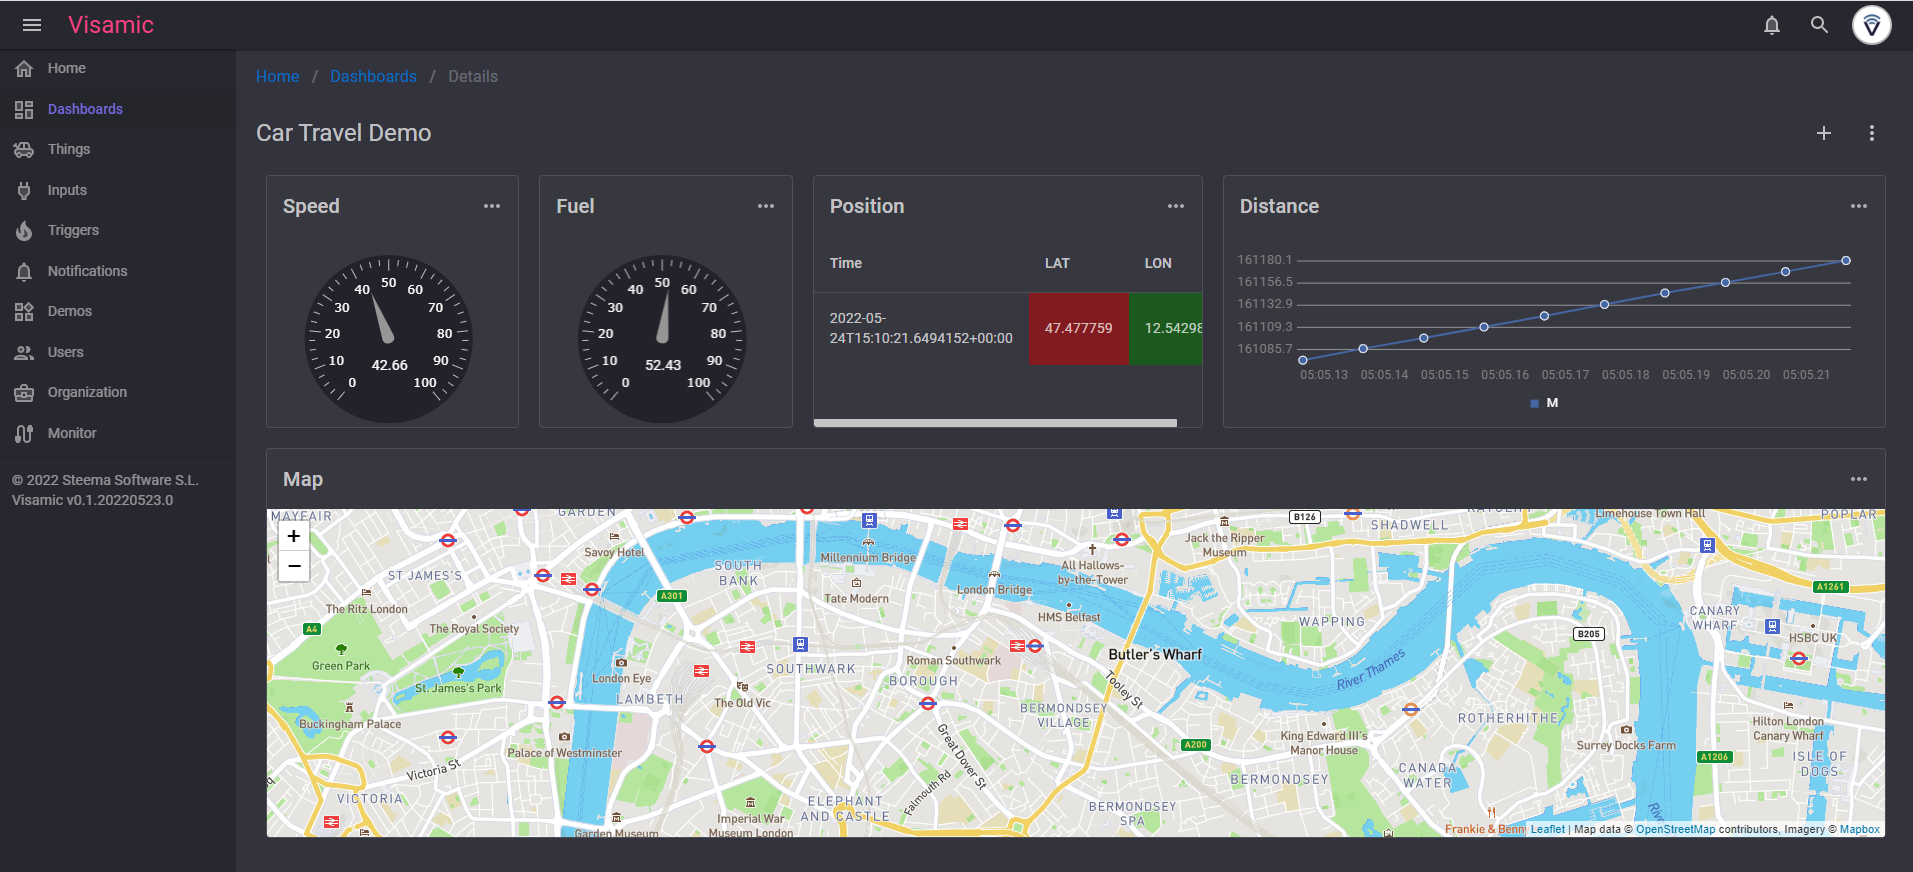 Visamc IoT Dashboard Web Service